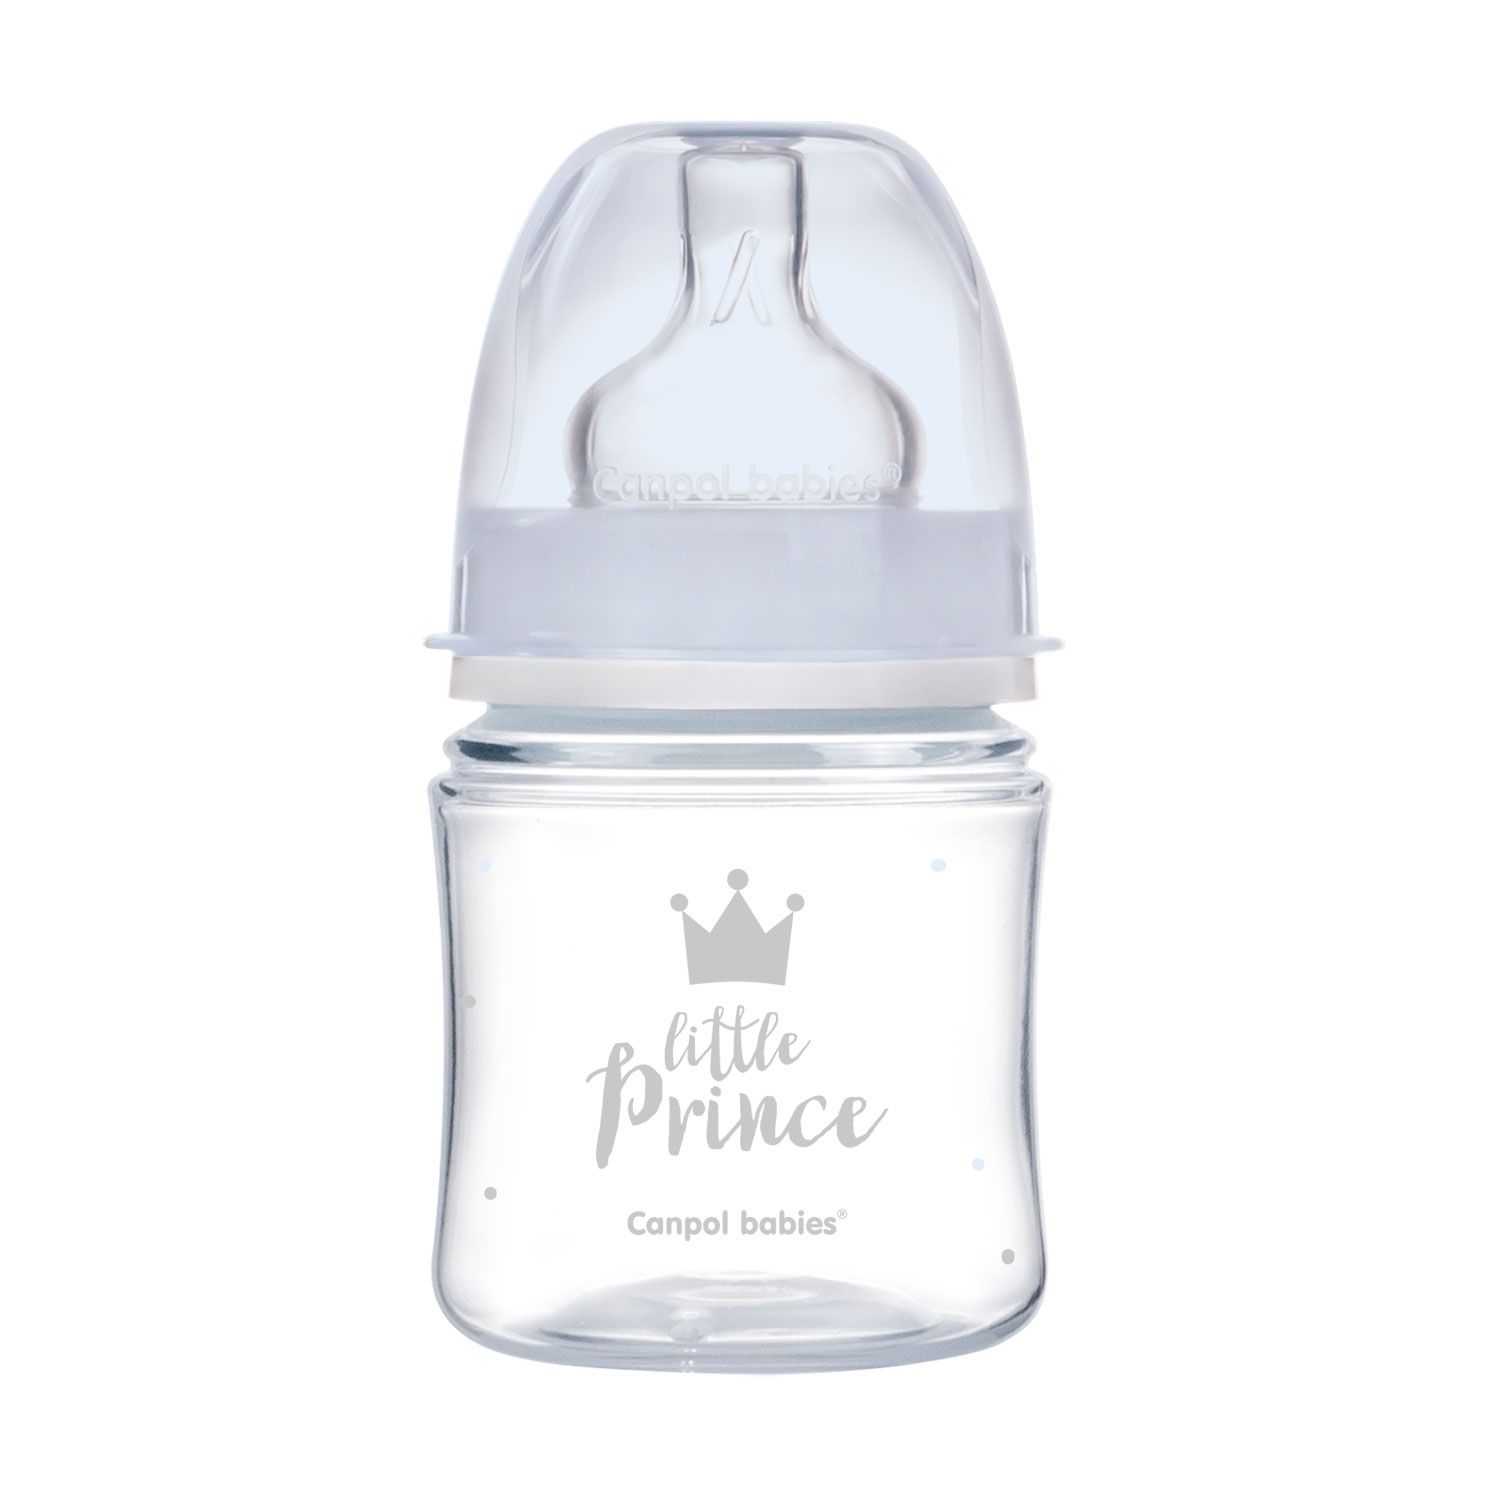 Антиколиковая бутылочка Canpol Babies Easystart Royal baby, с широким отверствием, 120 мл, синий (35/233_blu) - фото 1